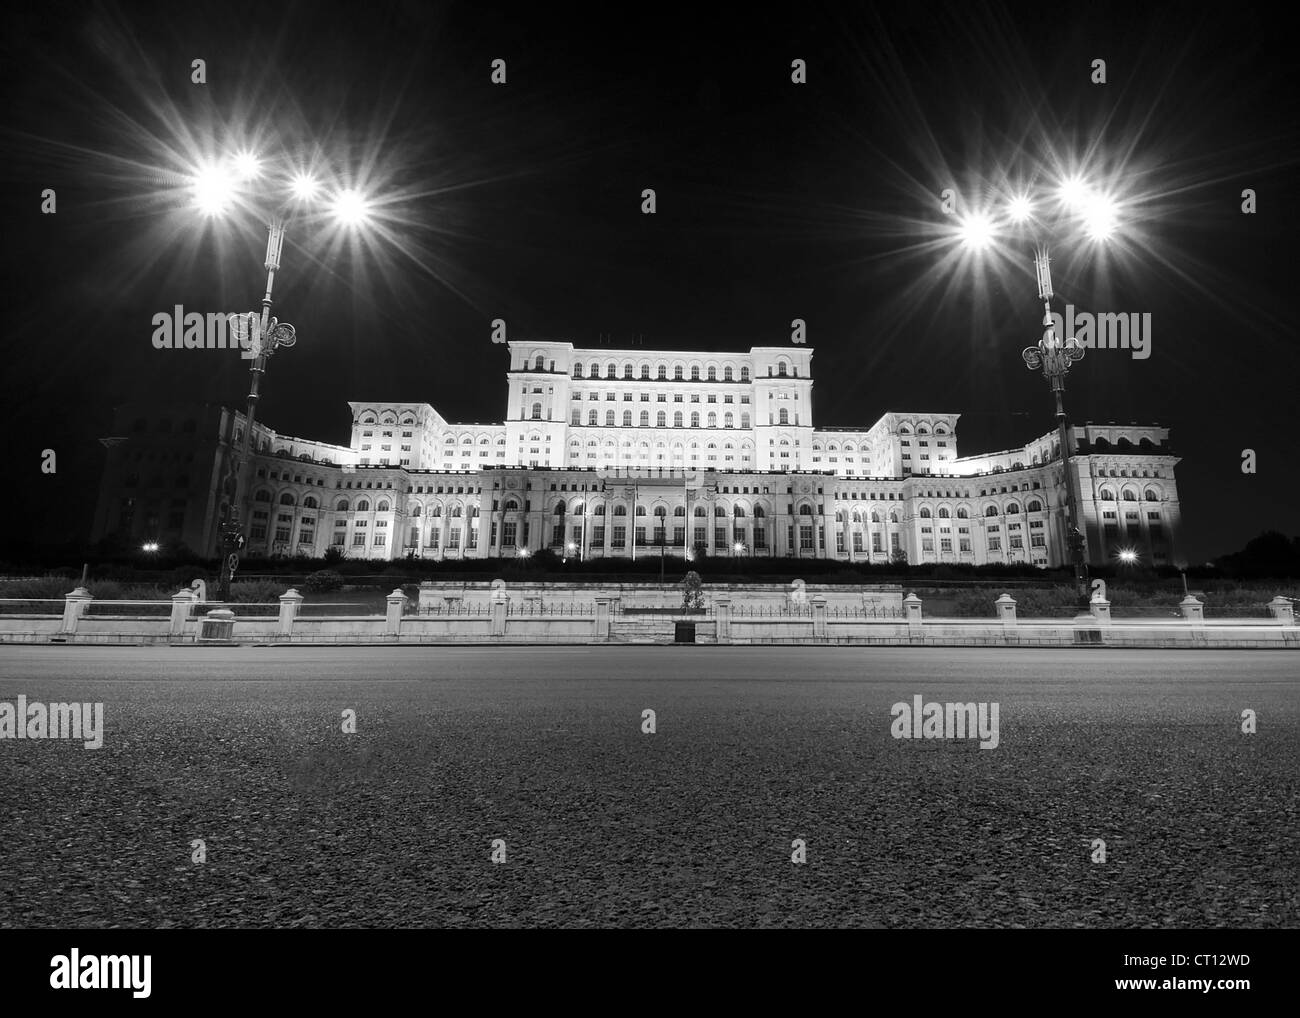 Vue de nuit sur l'avant de l'édifice du parlement à Bucarest, Roumanie Banque D'Images